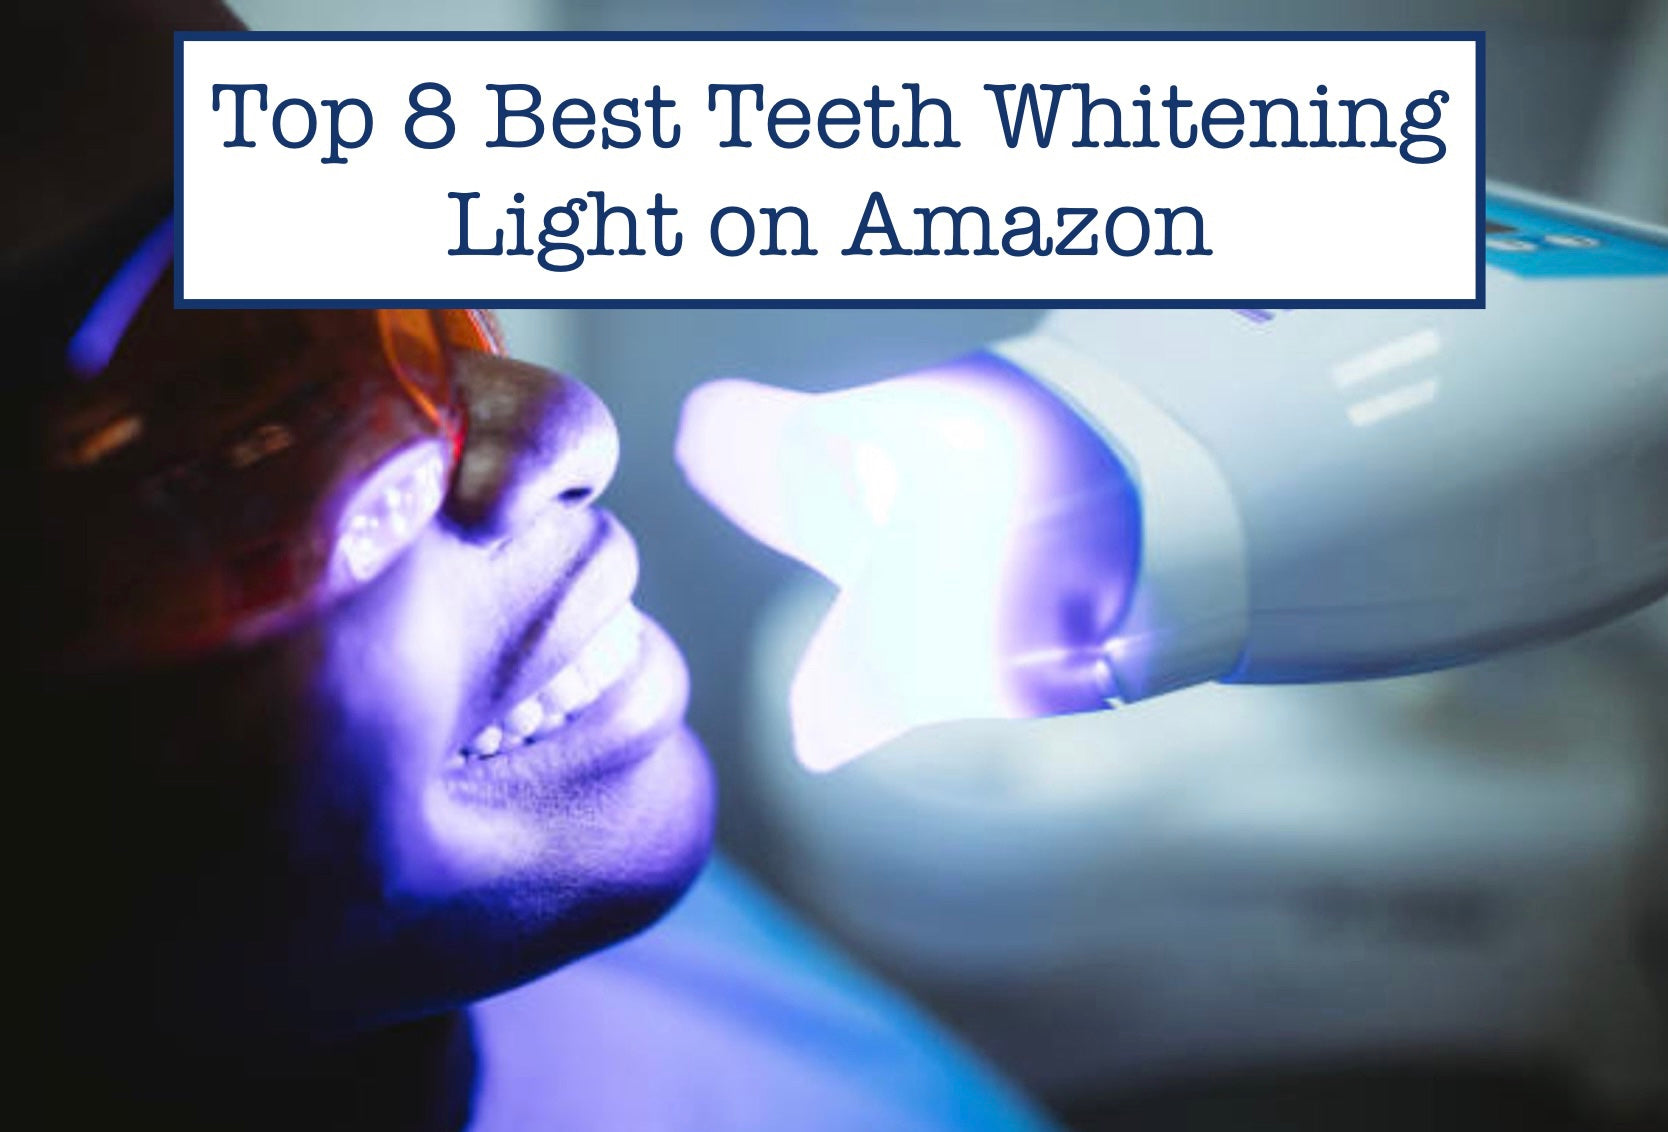 Top 8 Best Teeth Whitening Light on Amazon